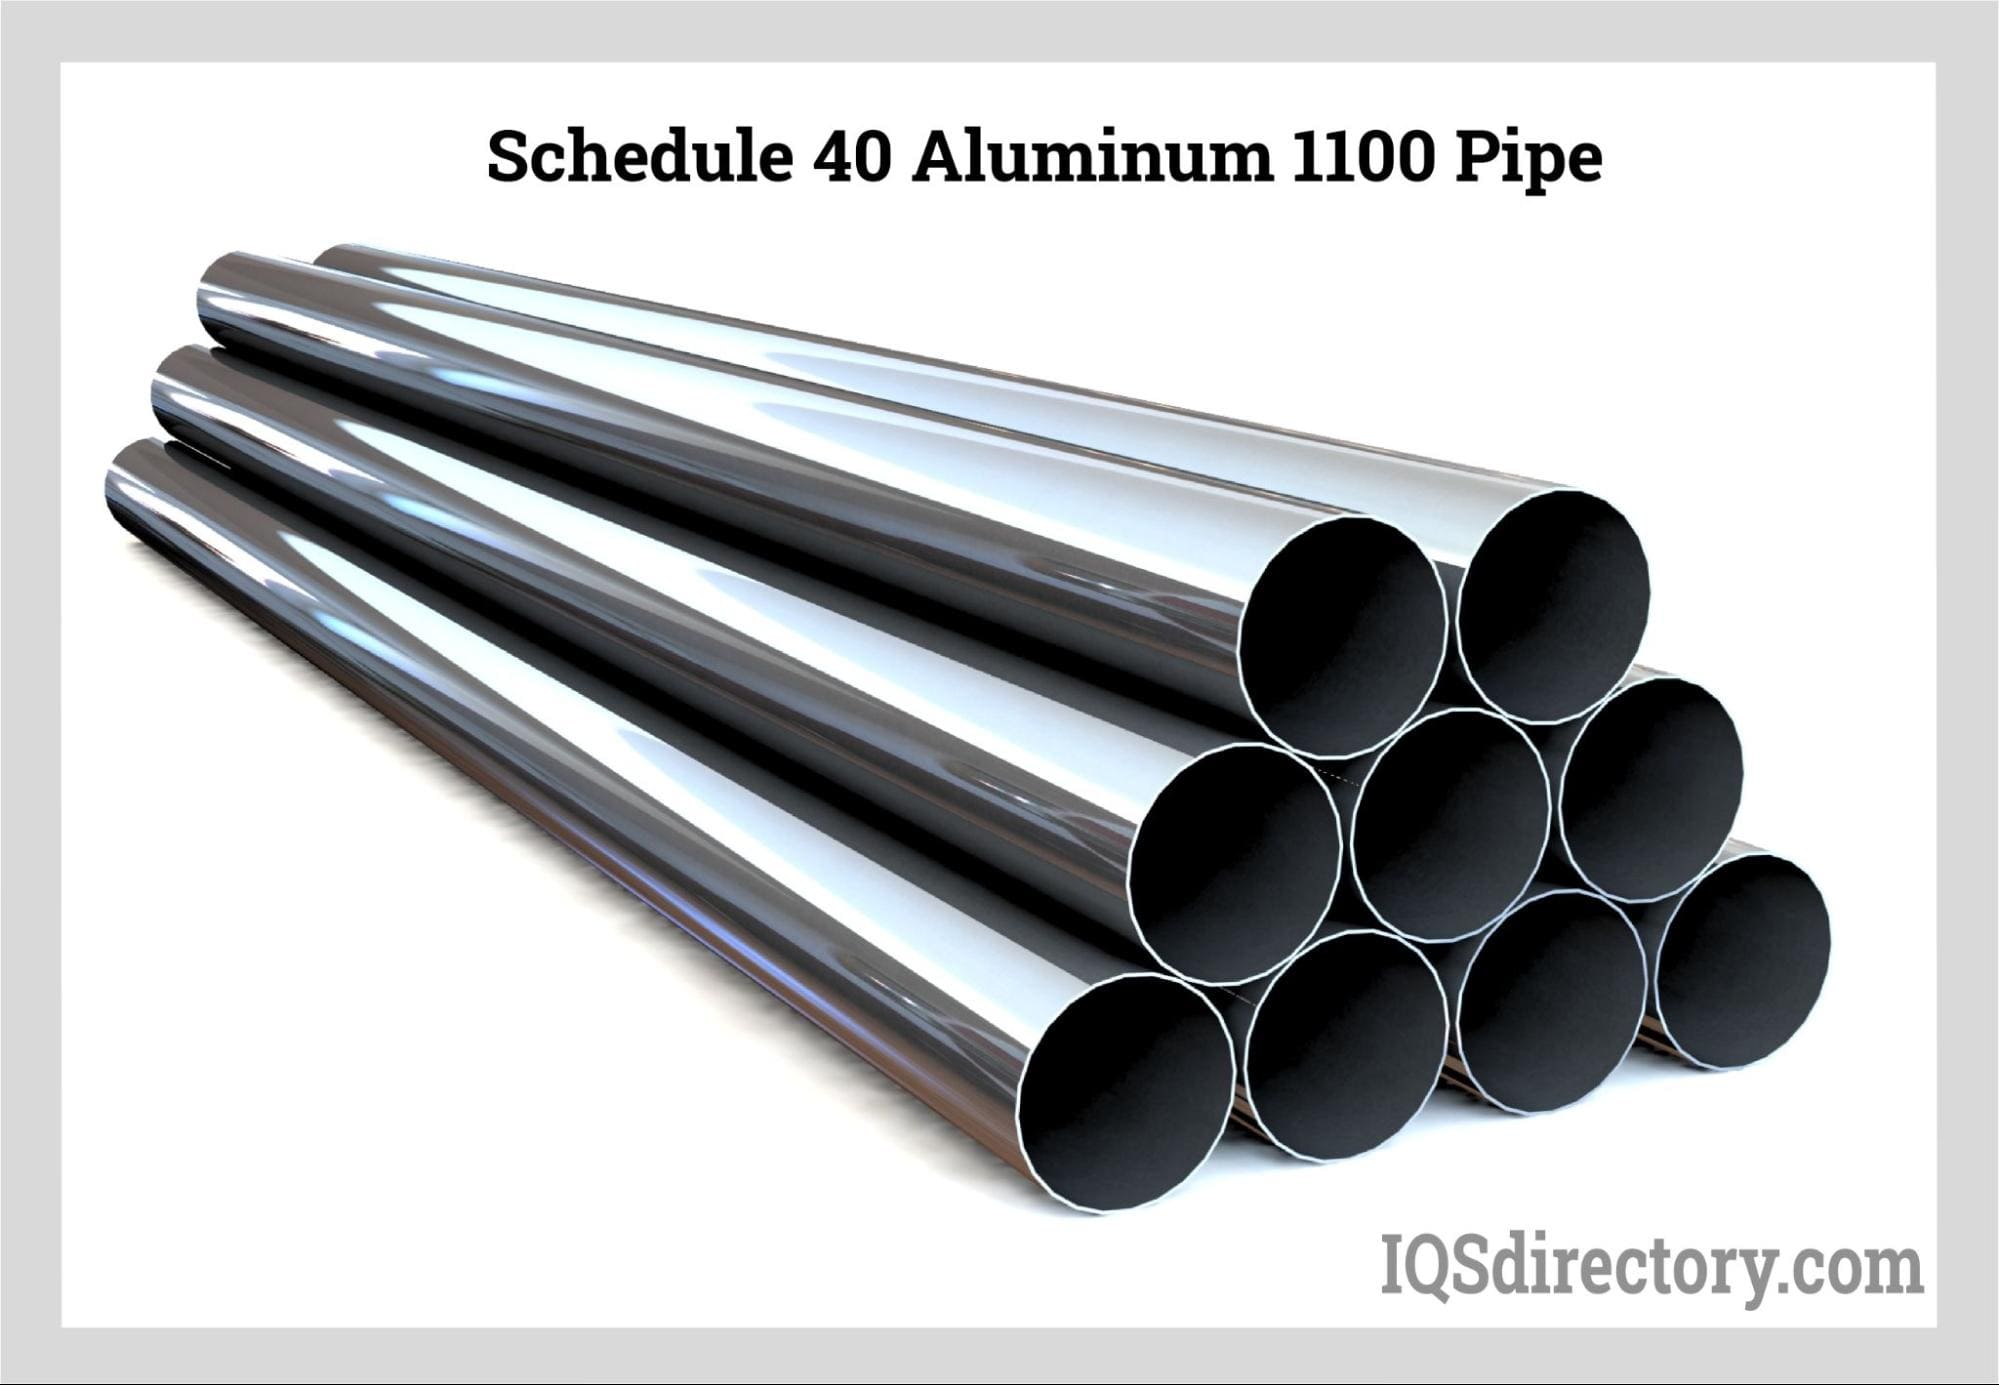 Schedule 40 Aluminum 1100 Pipe